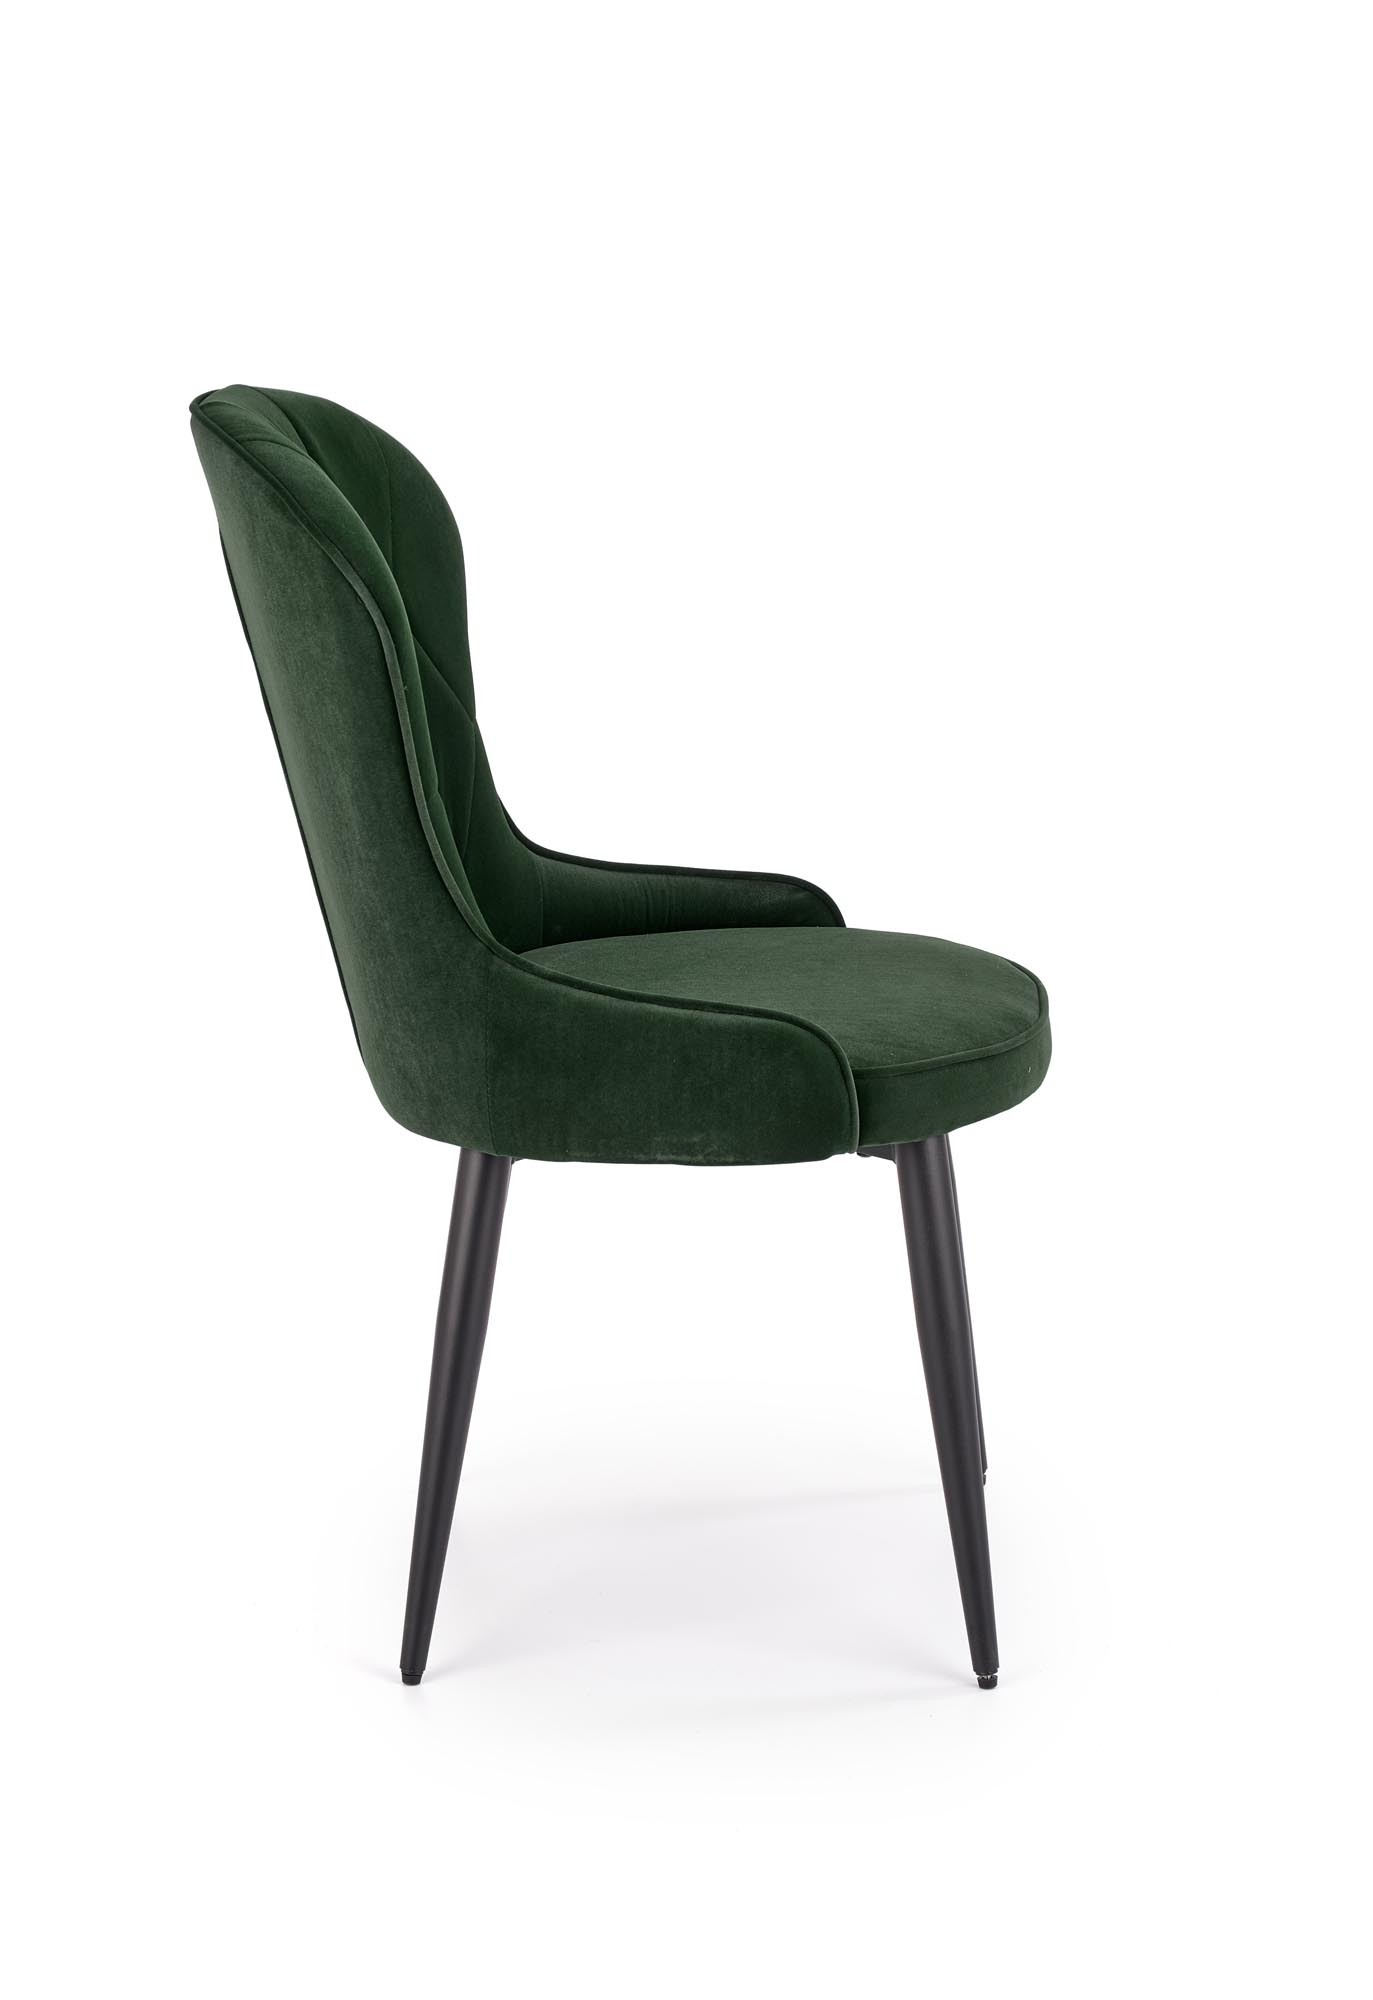 K366 krzesło ciemny zielony